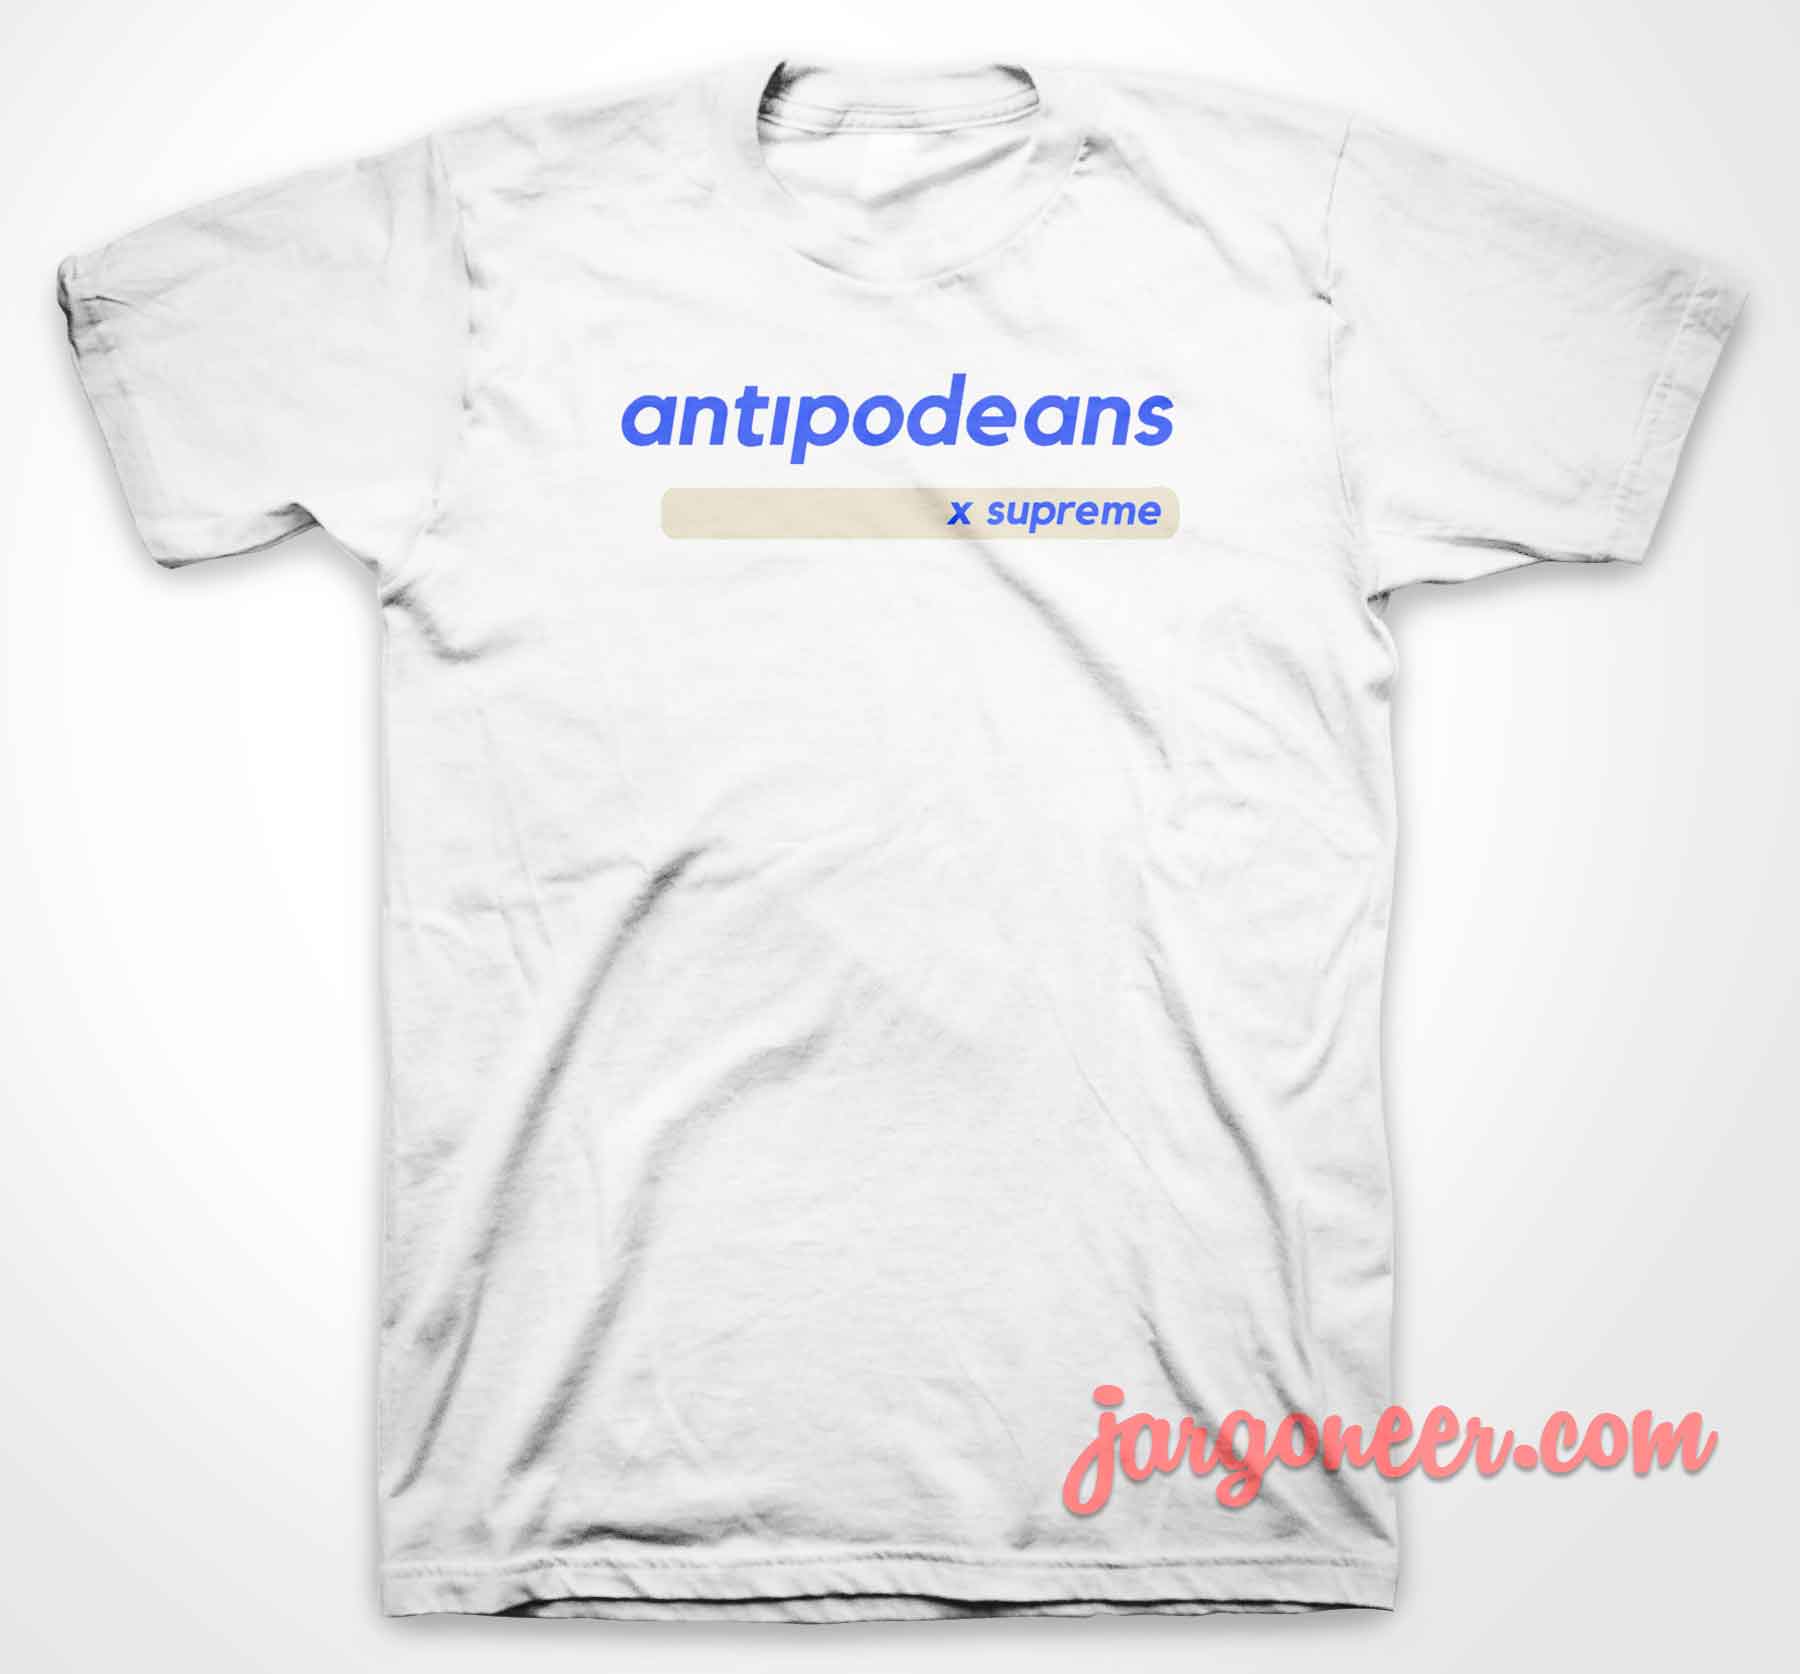 Antipodeans By Supreme - Shop Unique Graphic Cool Shirt Designs